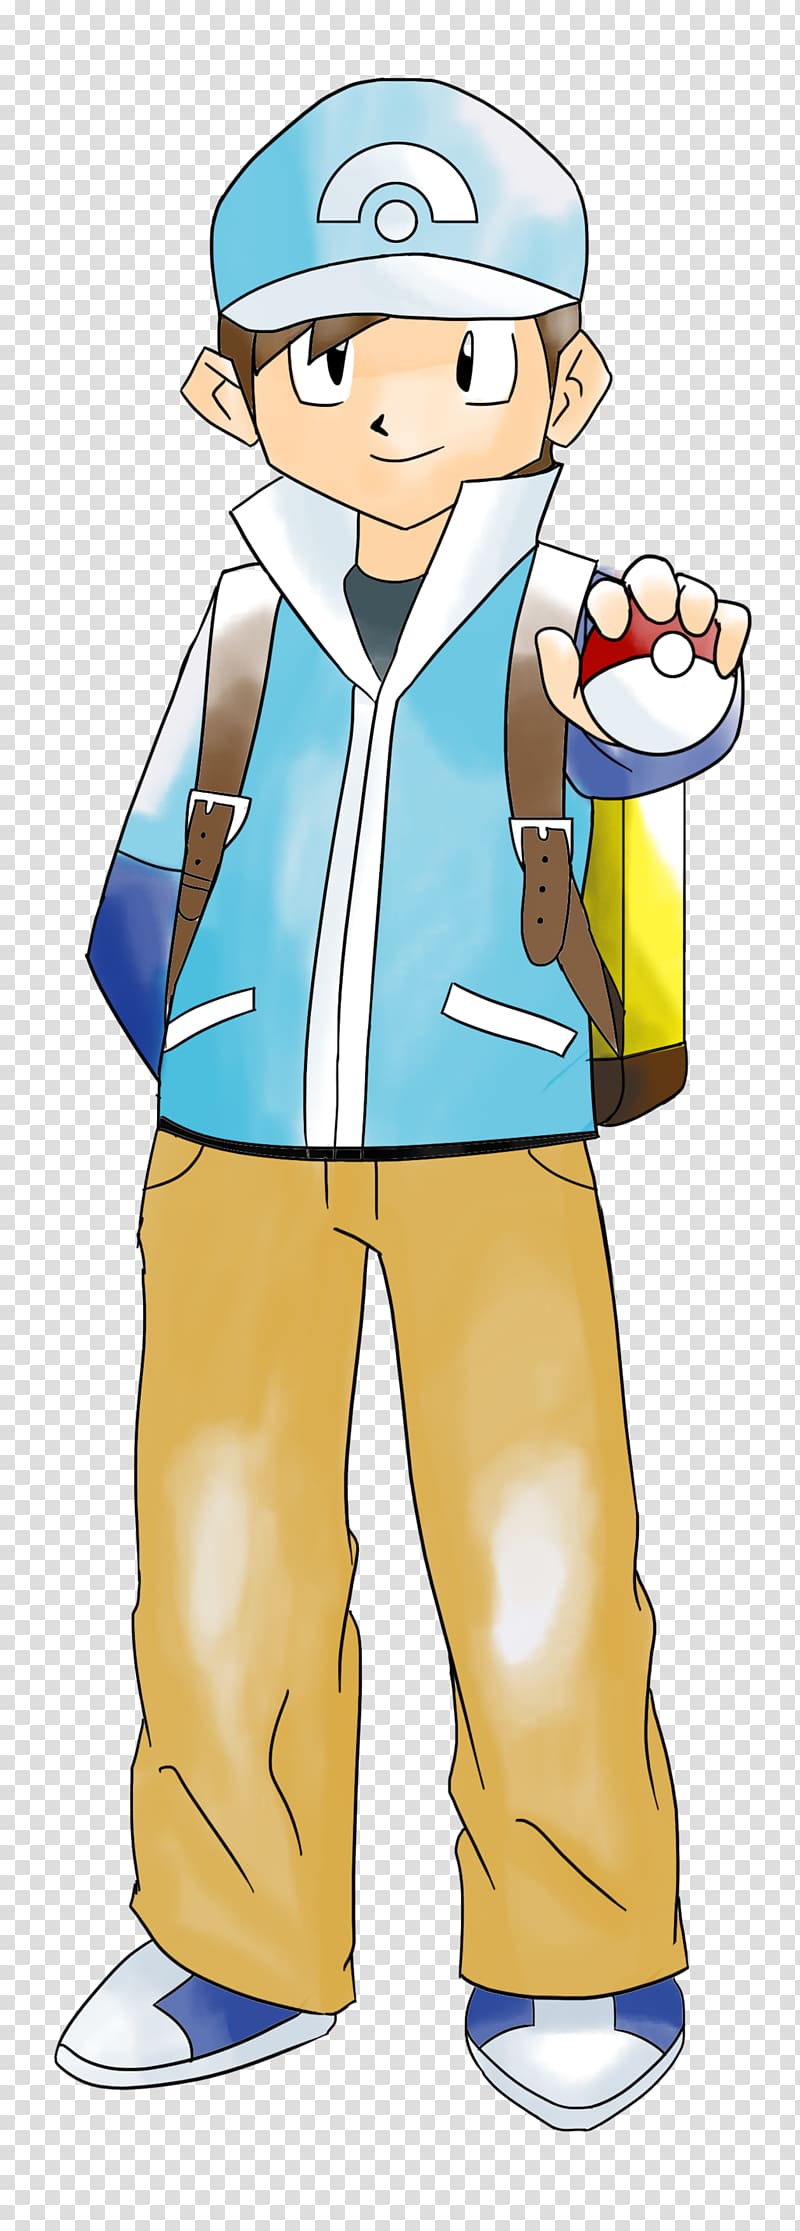 Pokémon Yellow Pokémon Trainer Sneakers Uniform, others transparent background PNG clipart